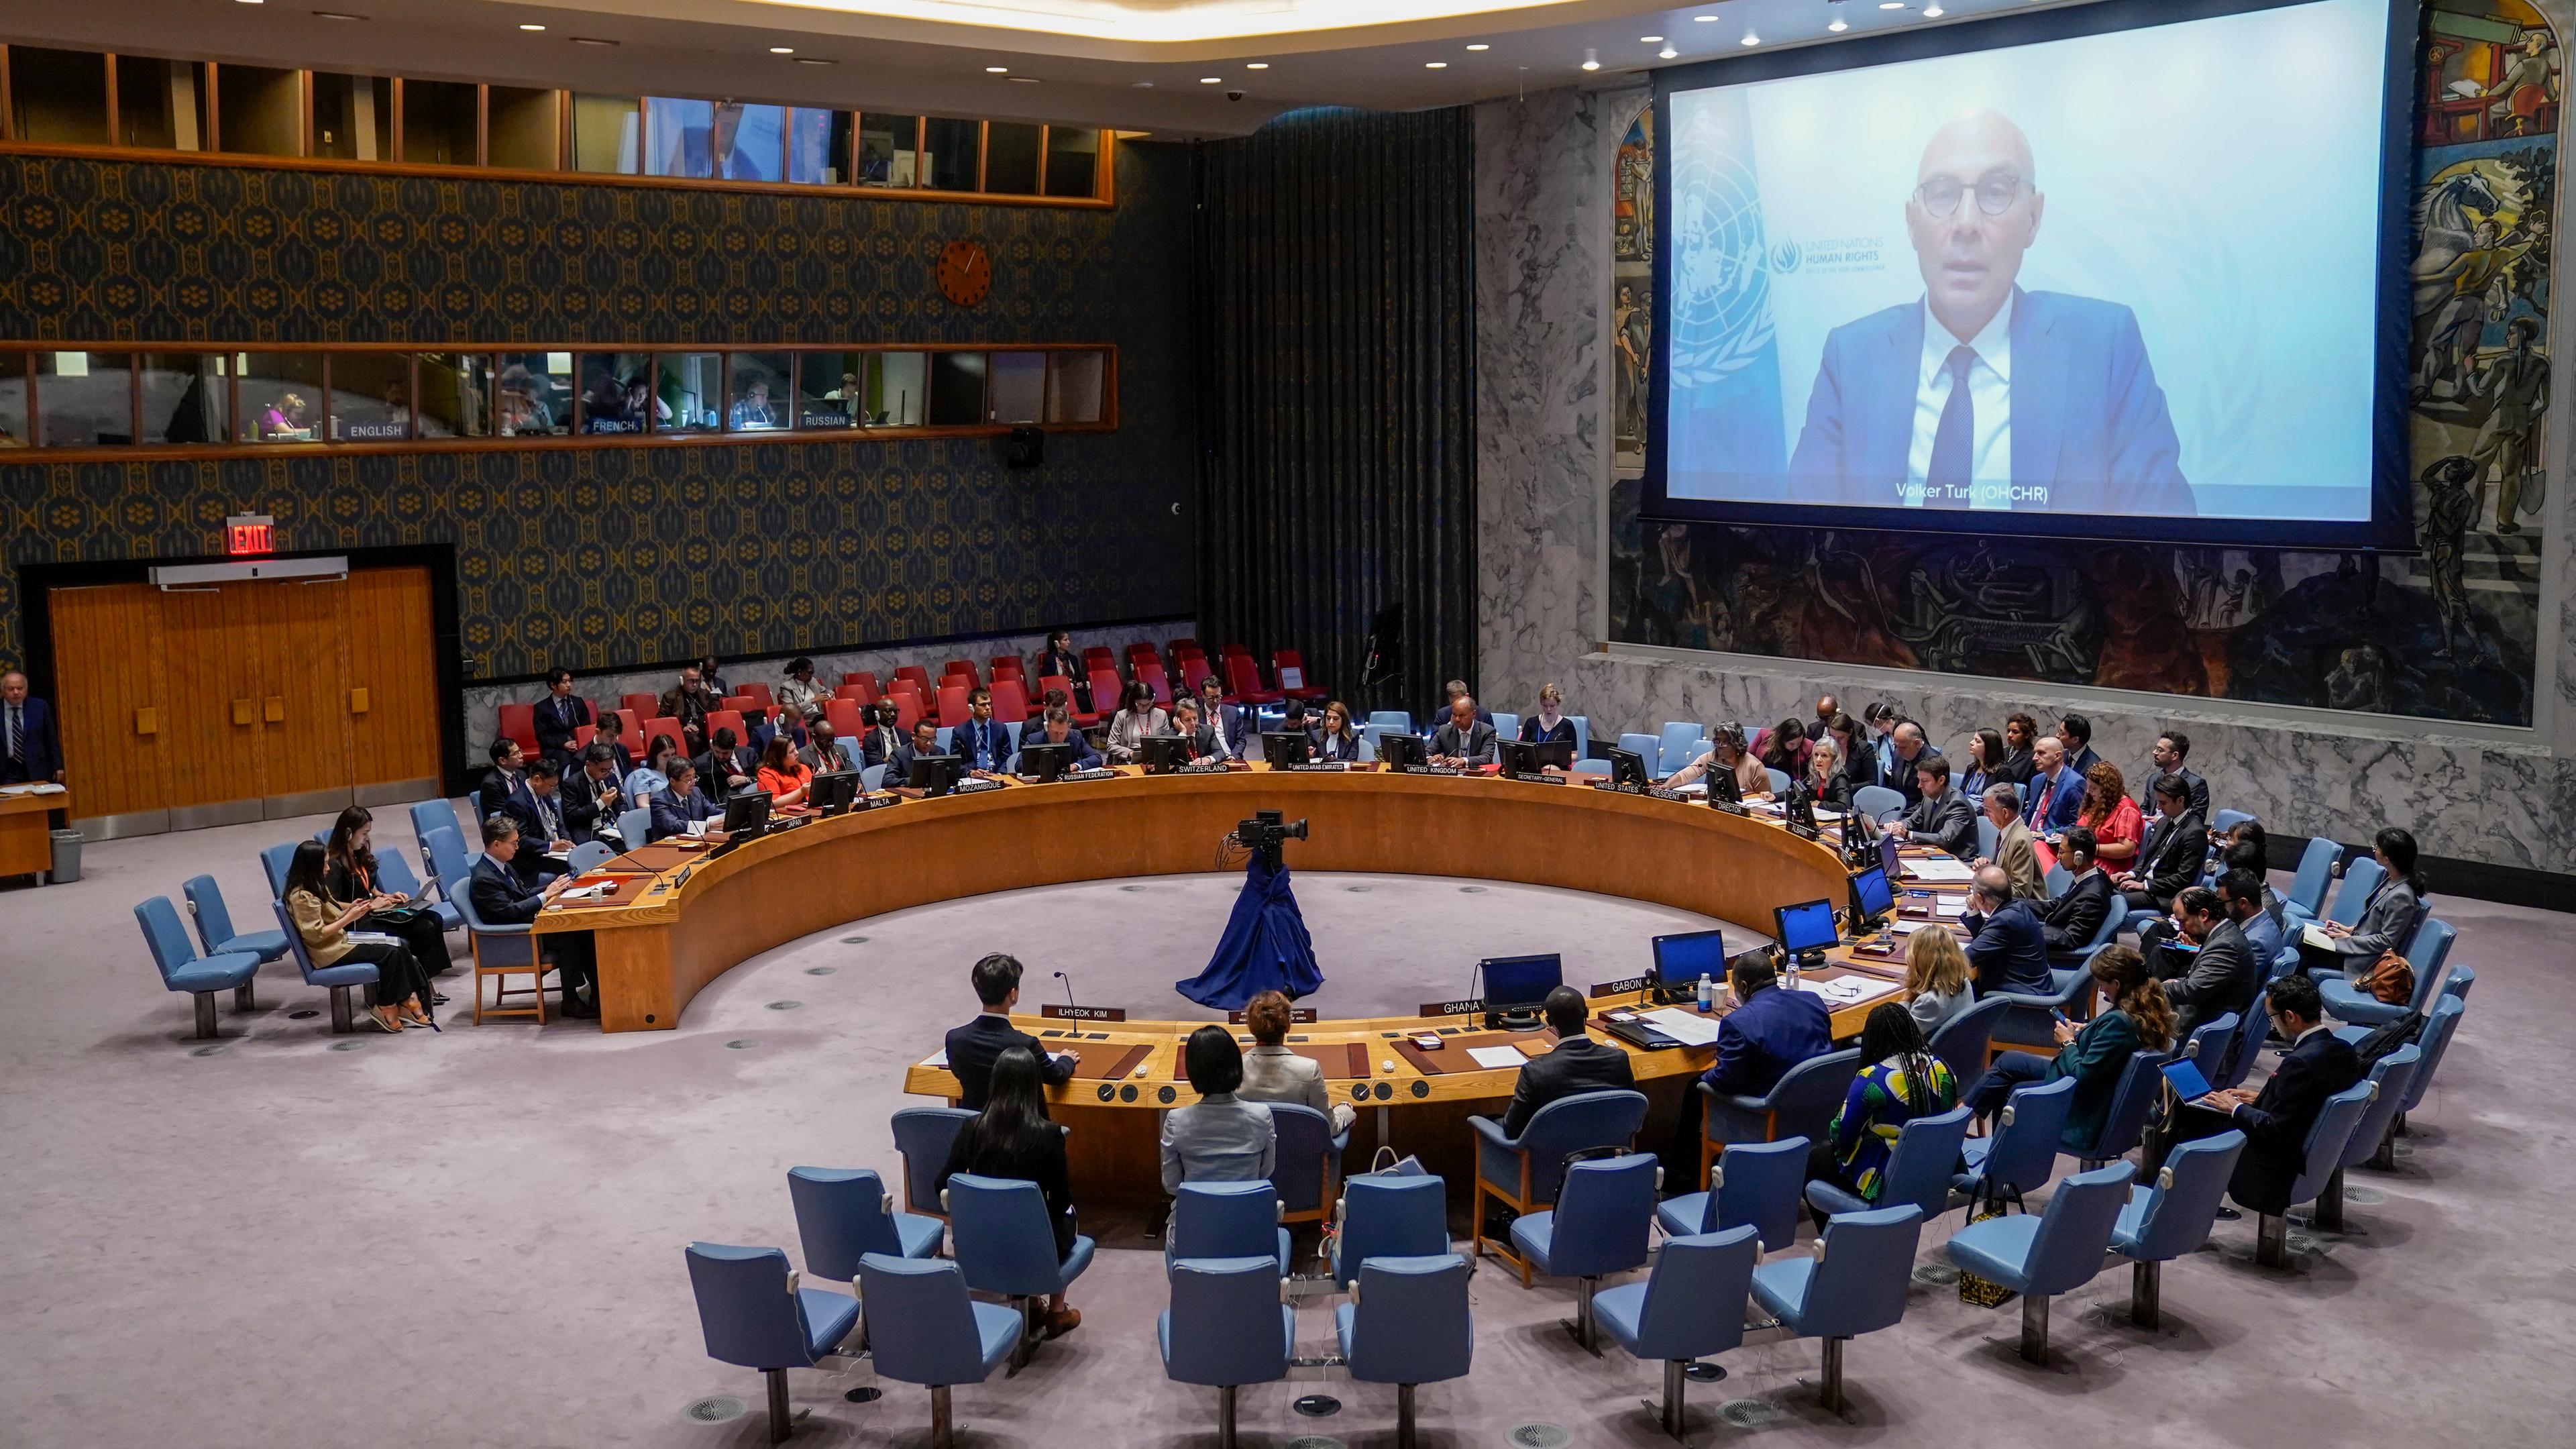 Sitzung des UN-Sicherheitsrats zur Lage in Nordkorea - Menschenrechtskommissar Volker Türk per Video zugeschaltet